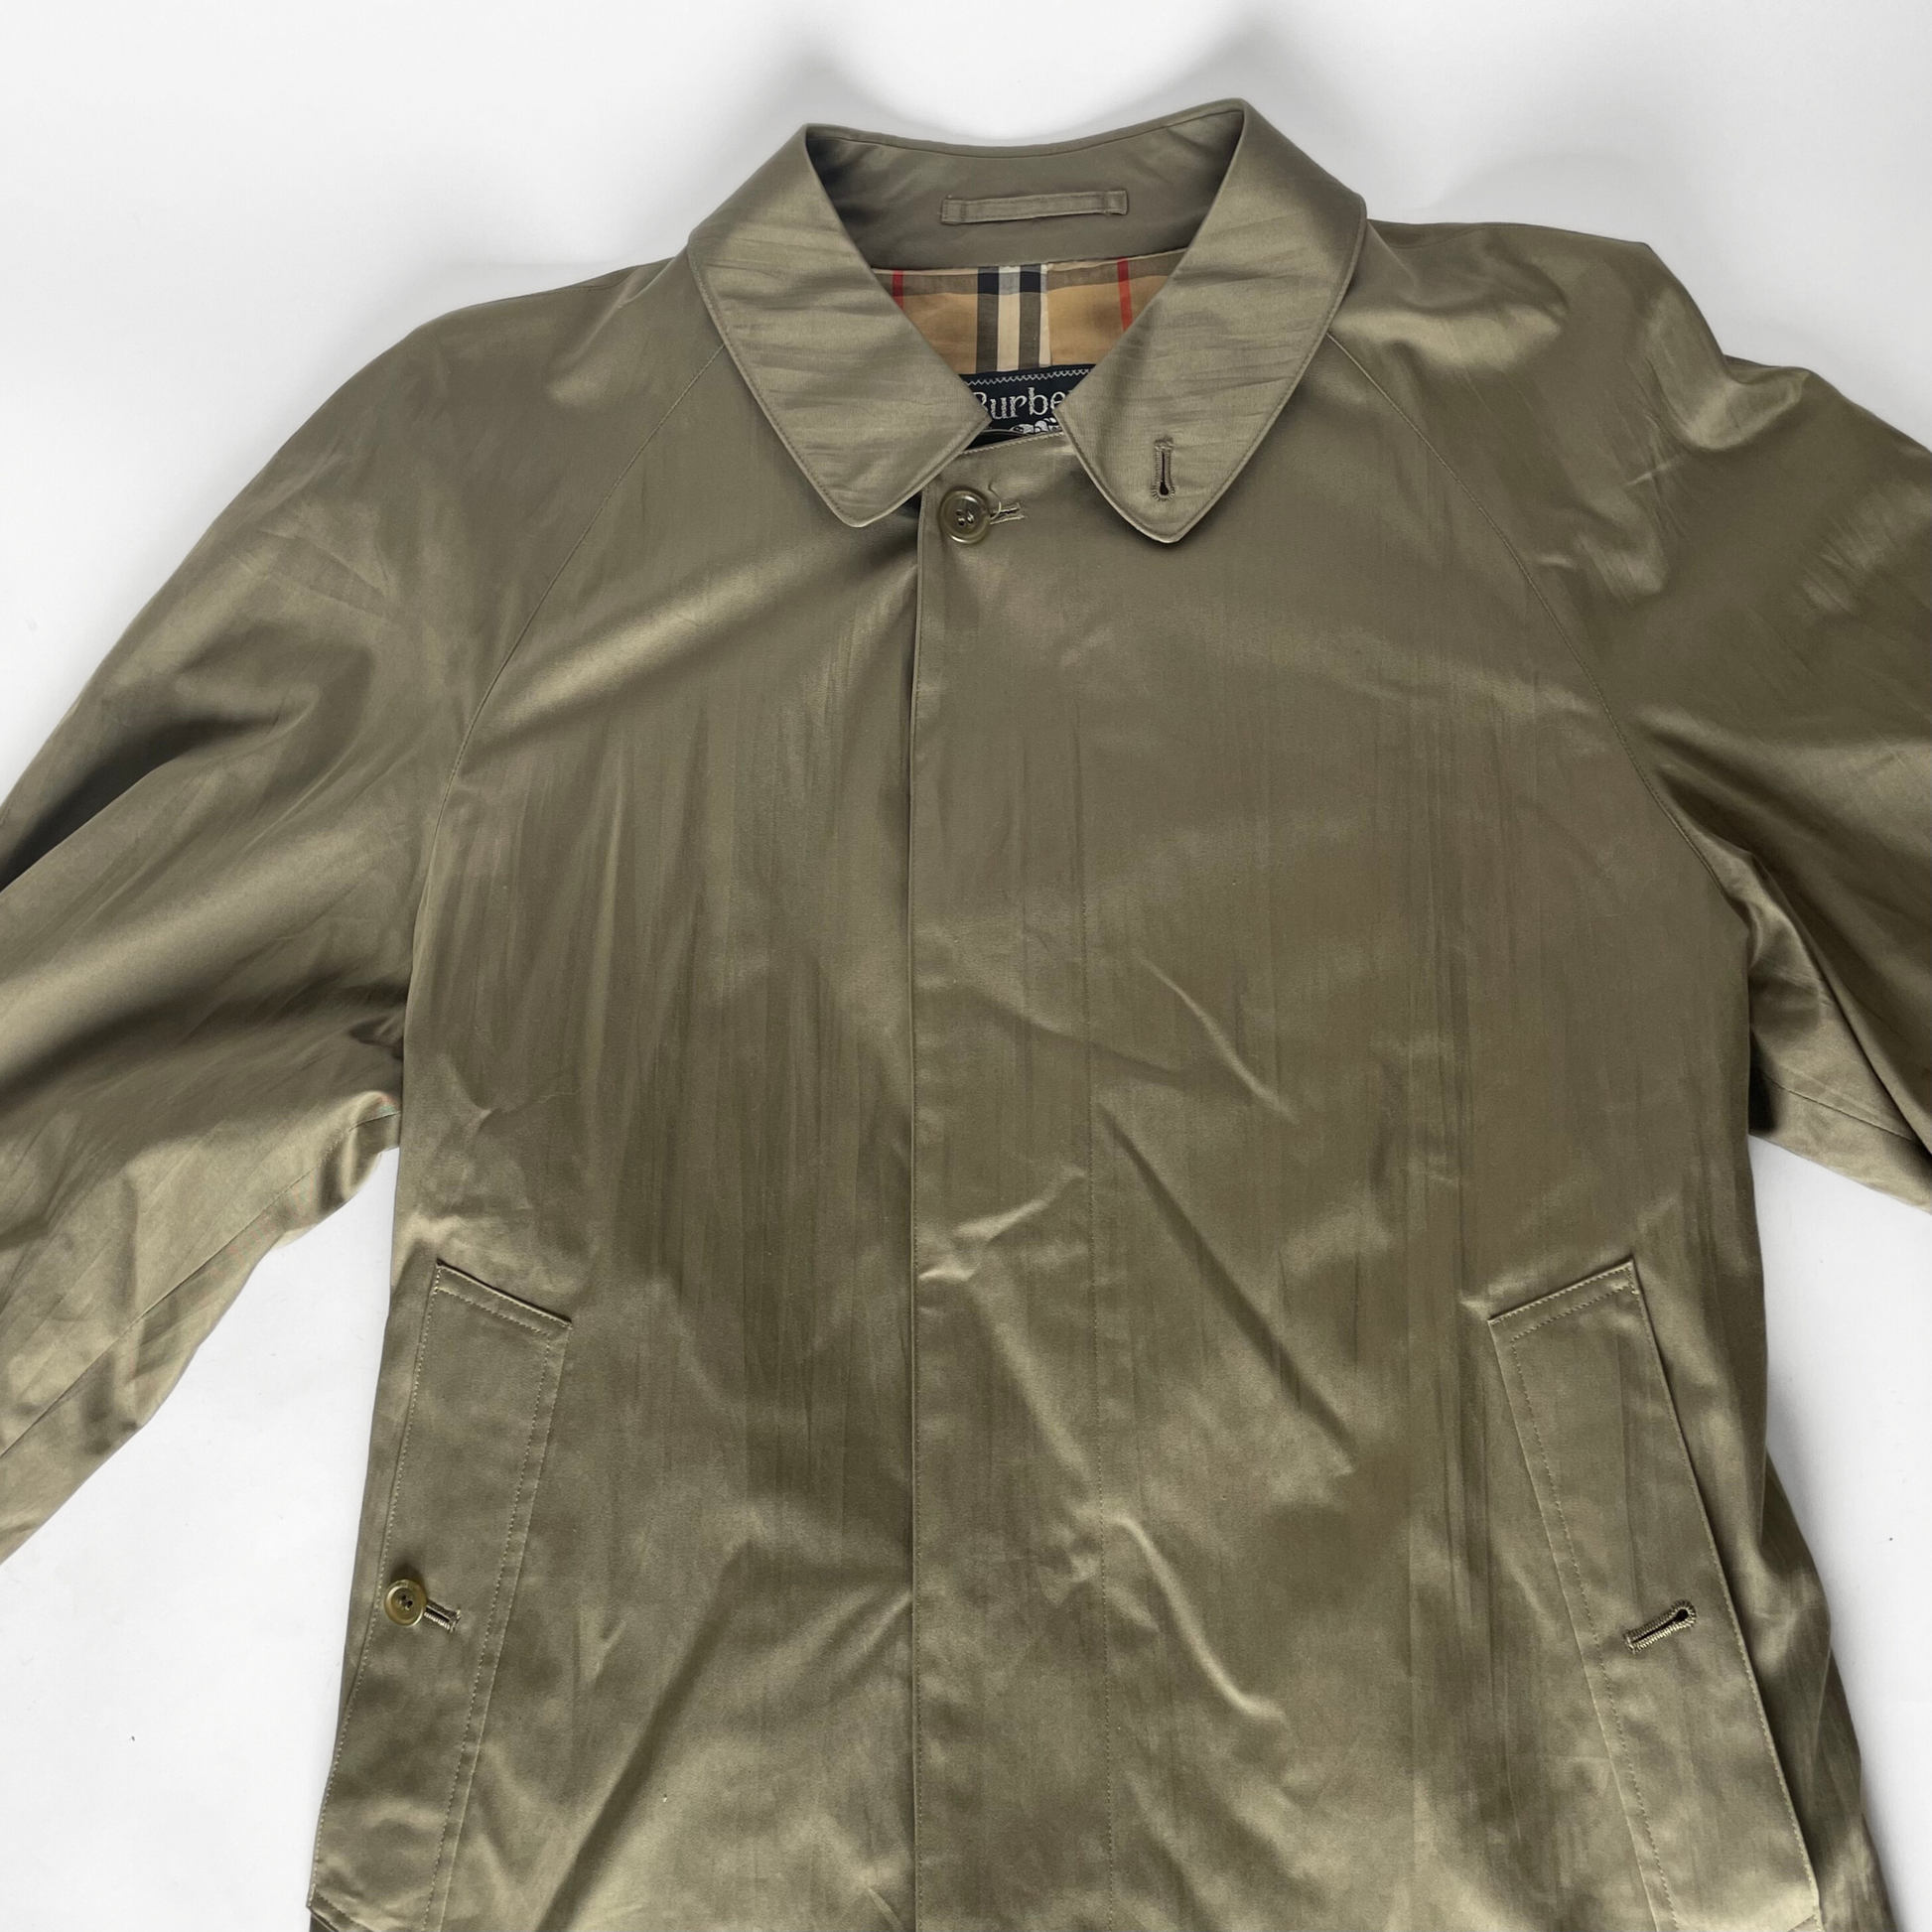 Burberry Burberry Trench Coat Cotton - coat - Etoile Luxury Vintage